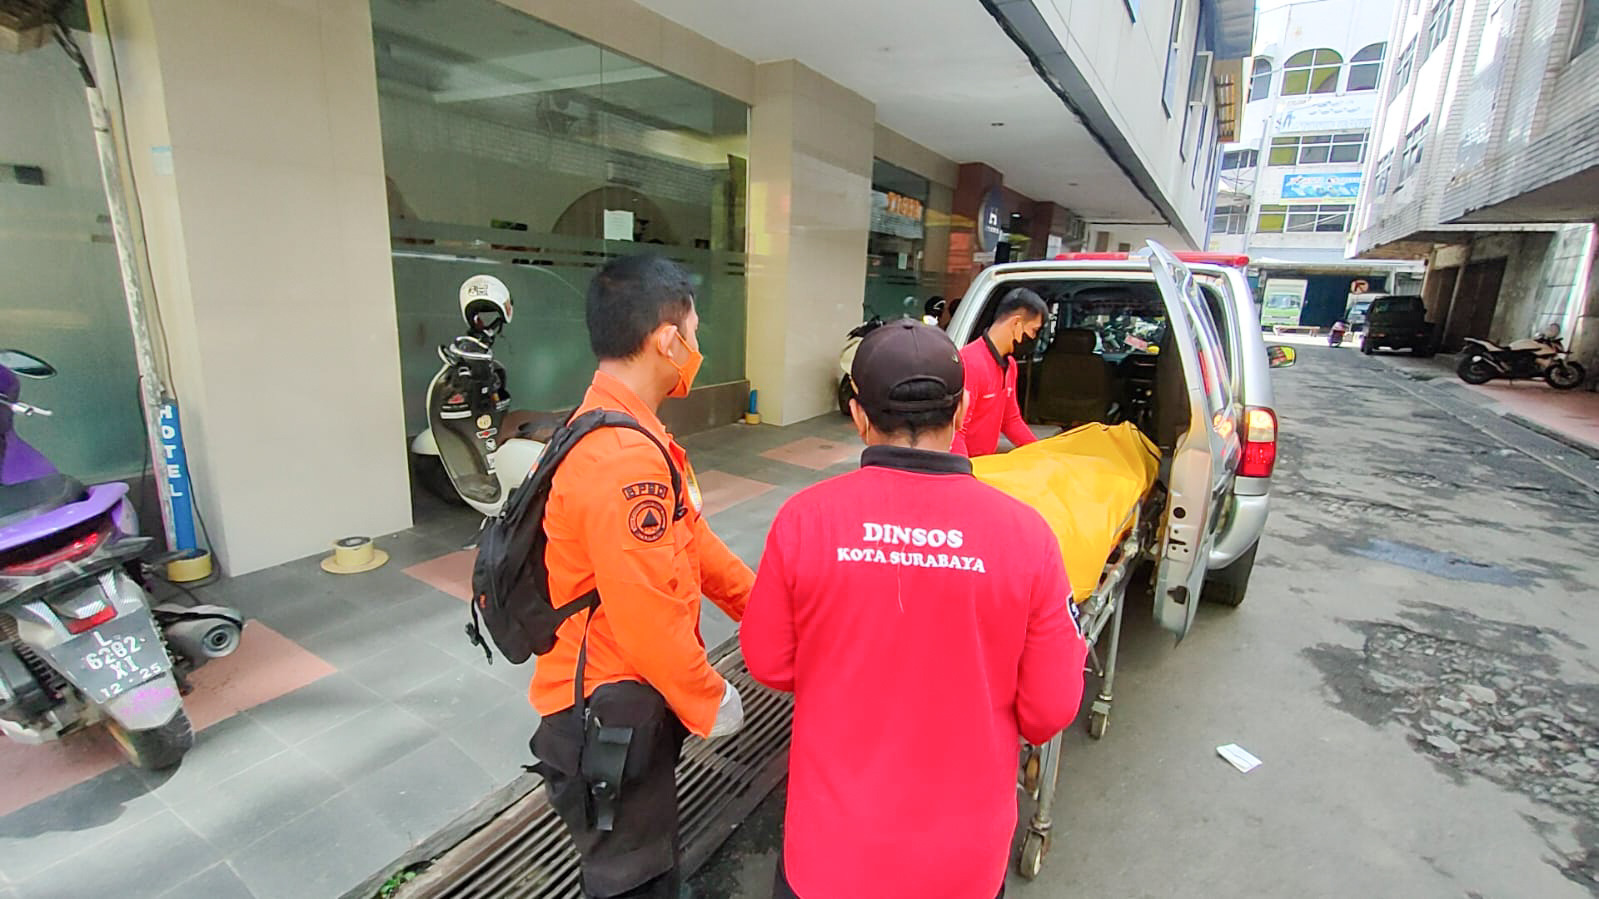 Pria Asal Jakbar Ditemukan Tewas di Kamar Hotel Surabaya